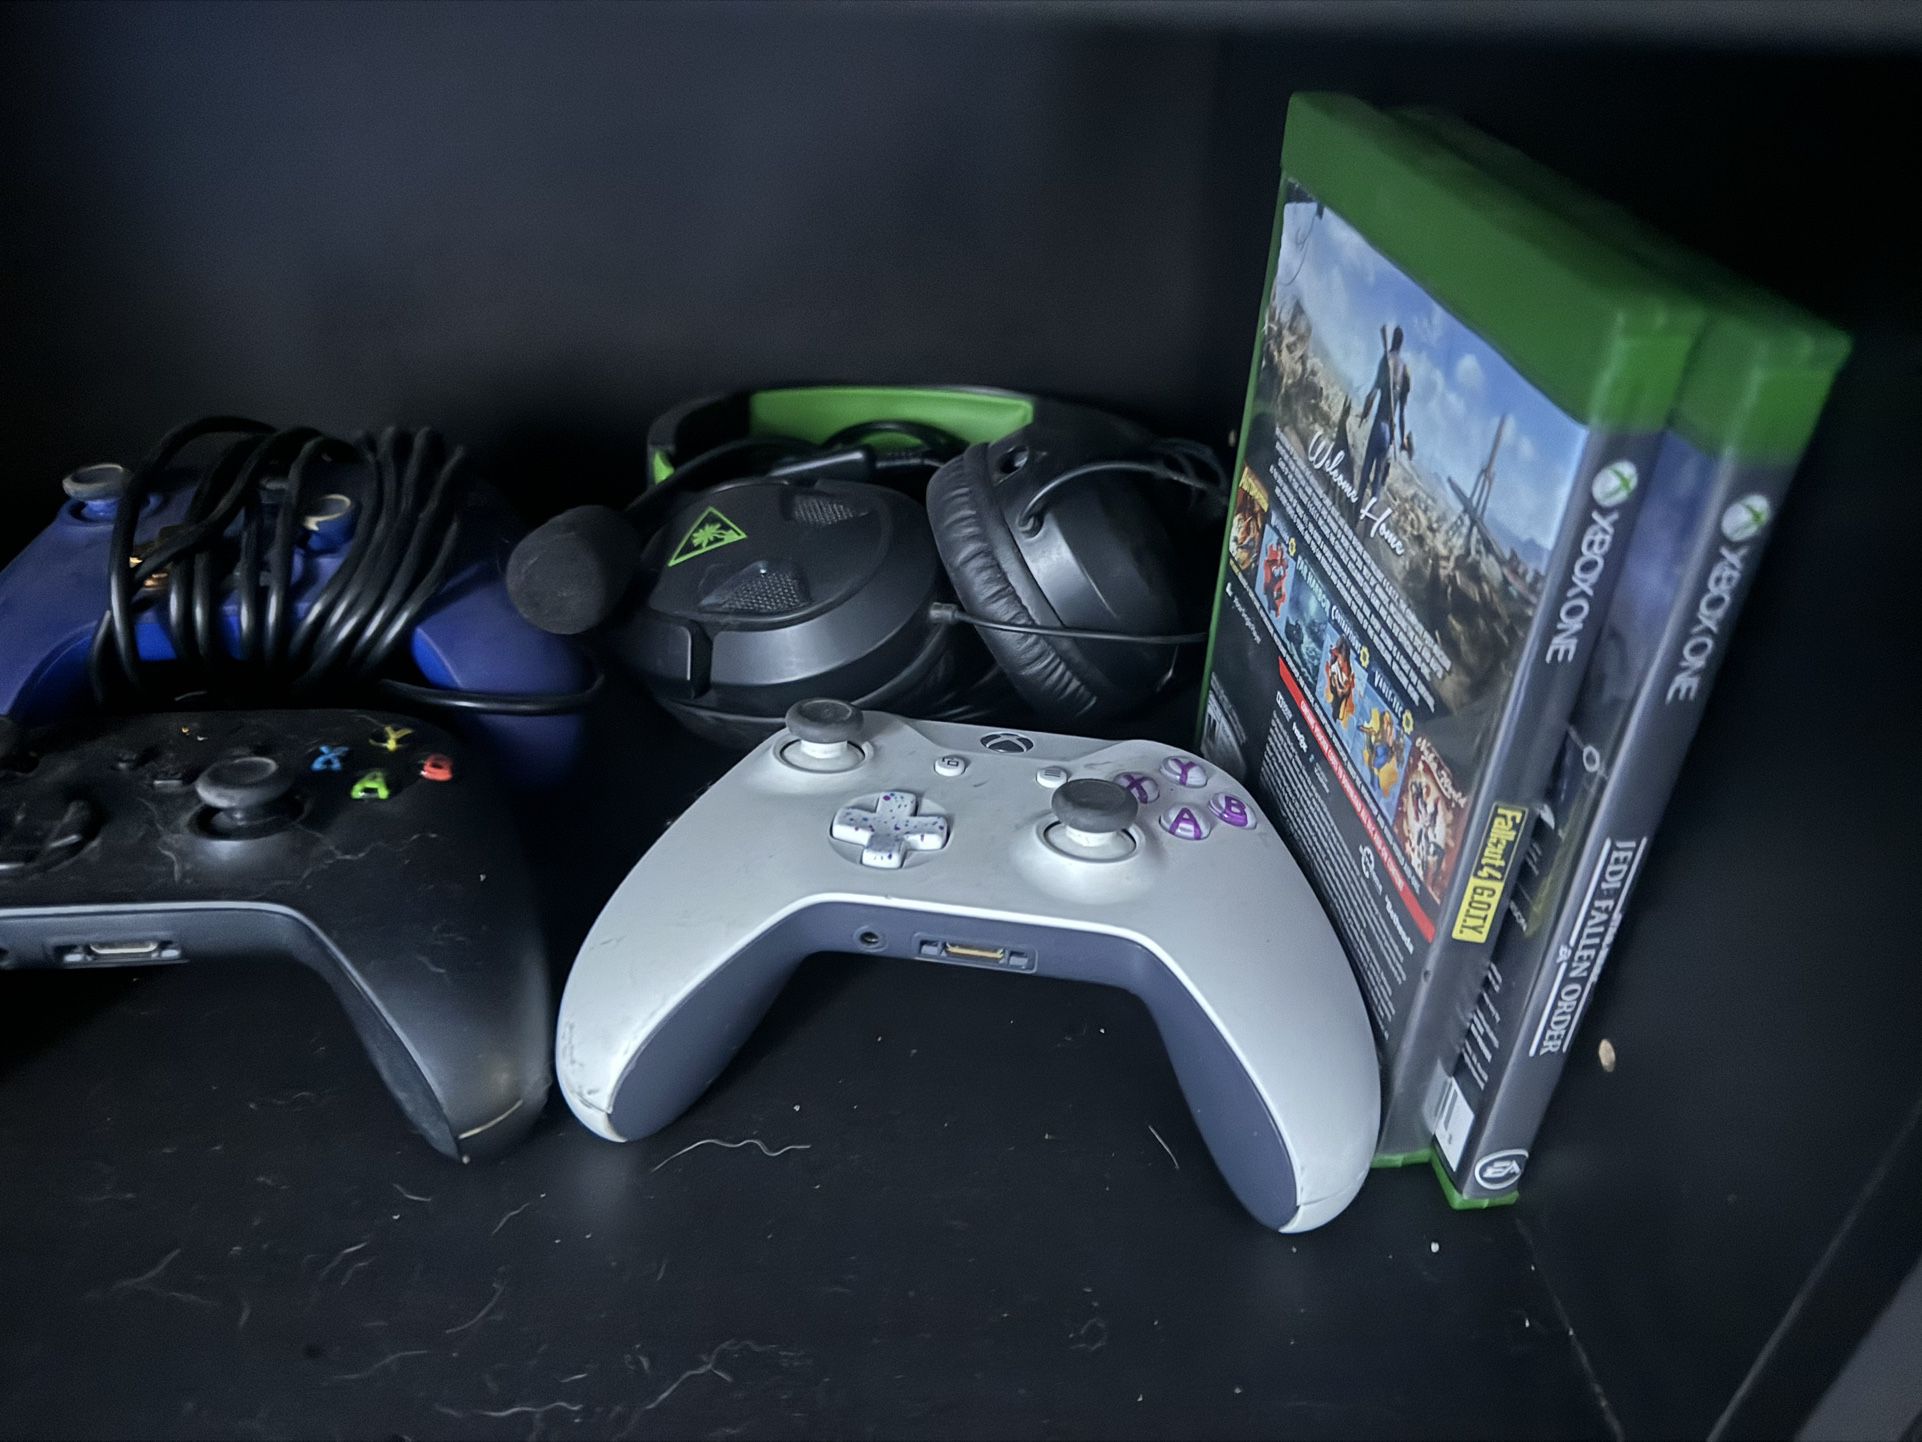 Xbox 0ne X